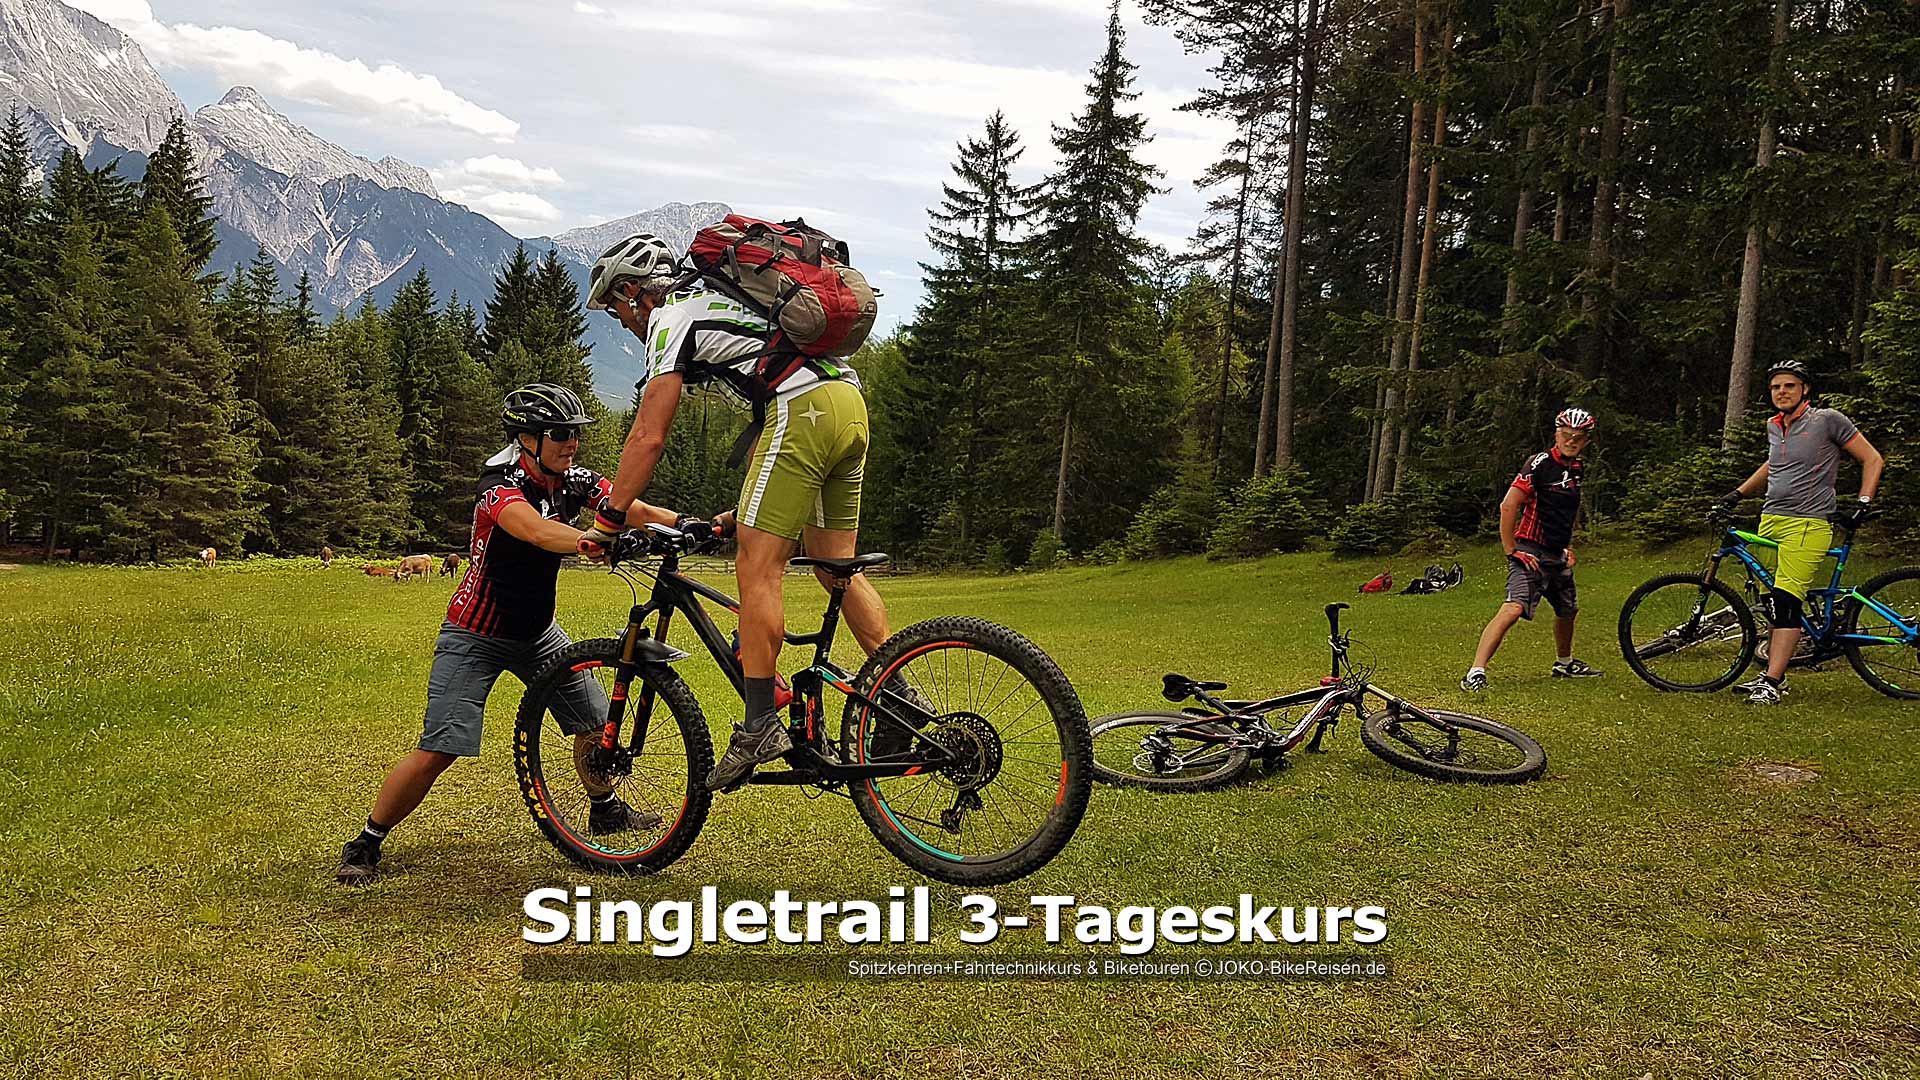 MTB-Singletrail 3-Tageskurs: lernen das Hinterrad kontrolliert anzuheben, um es dann folgend (in der Spitzkehre) zu versetzen